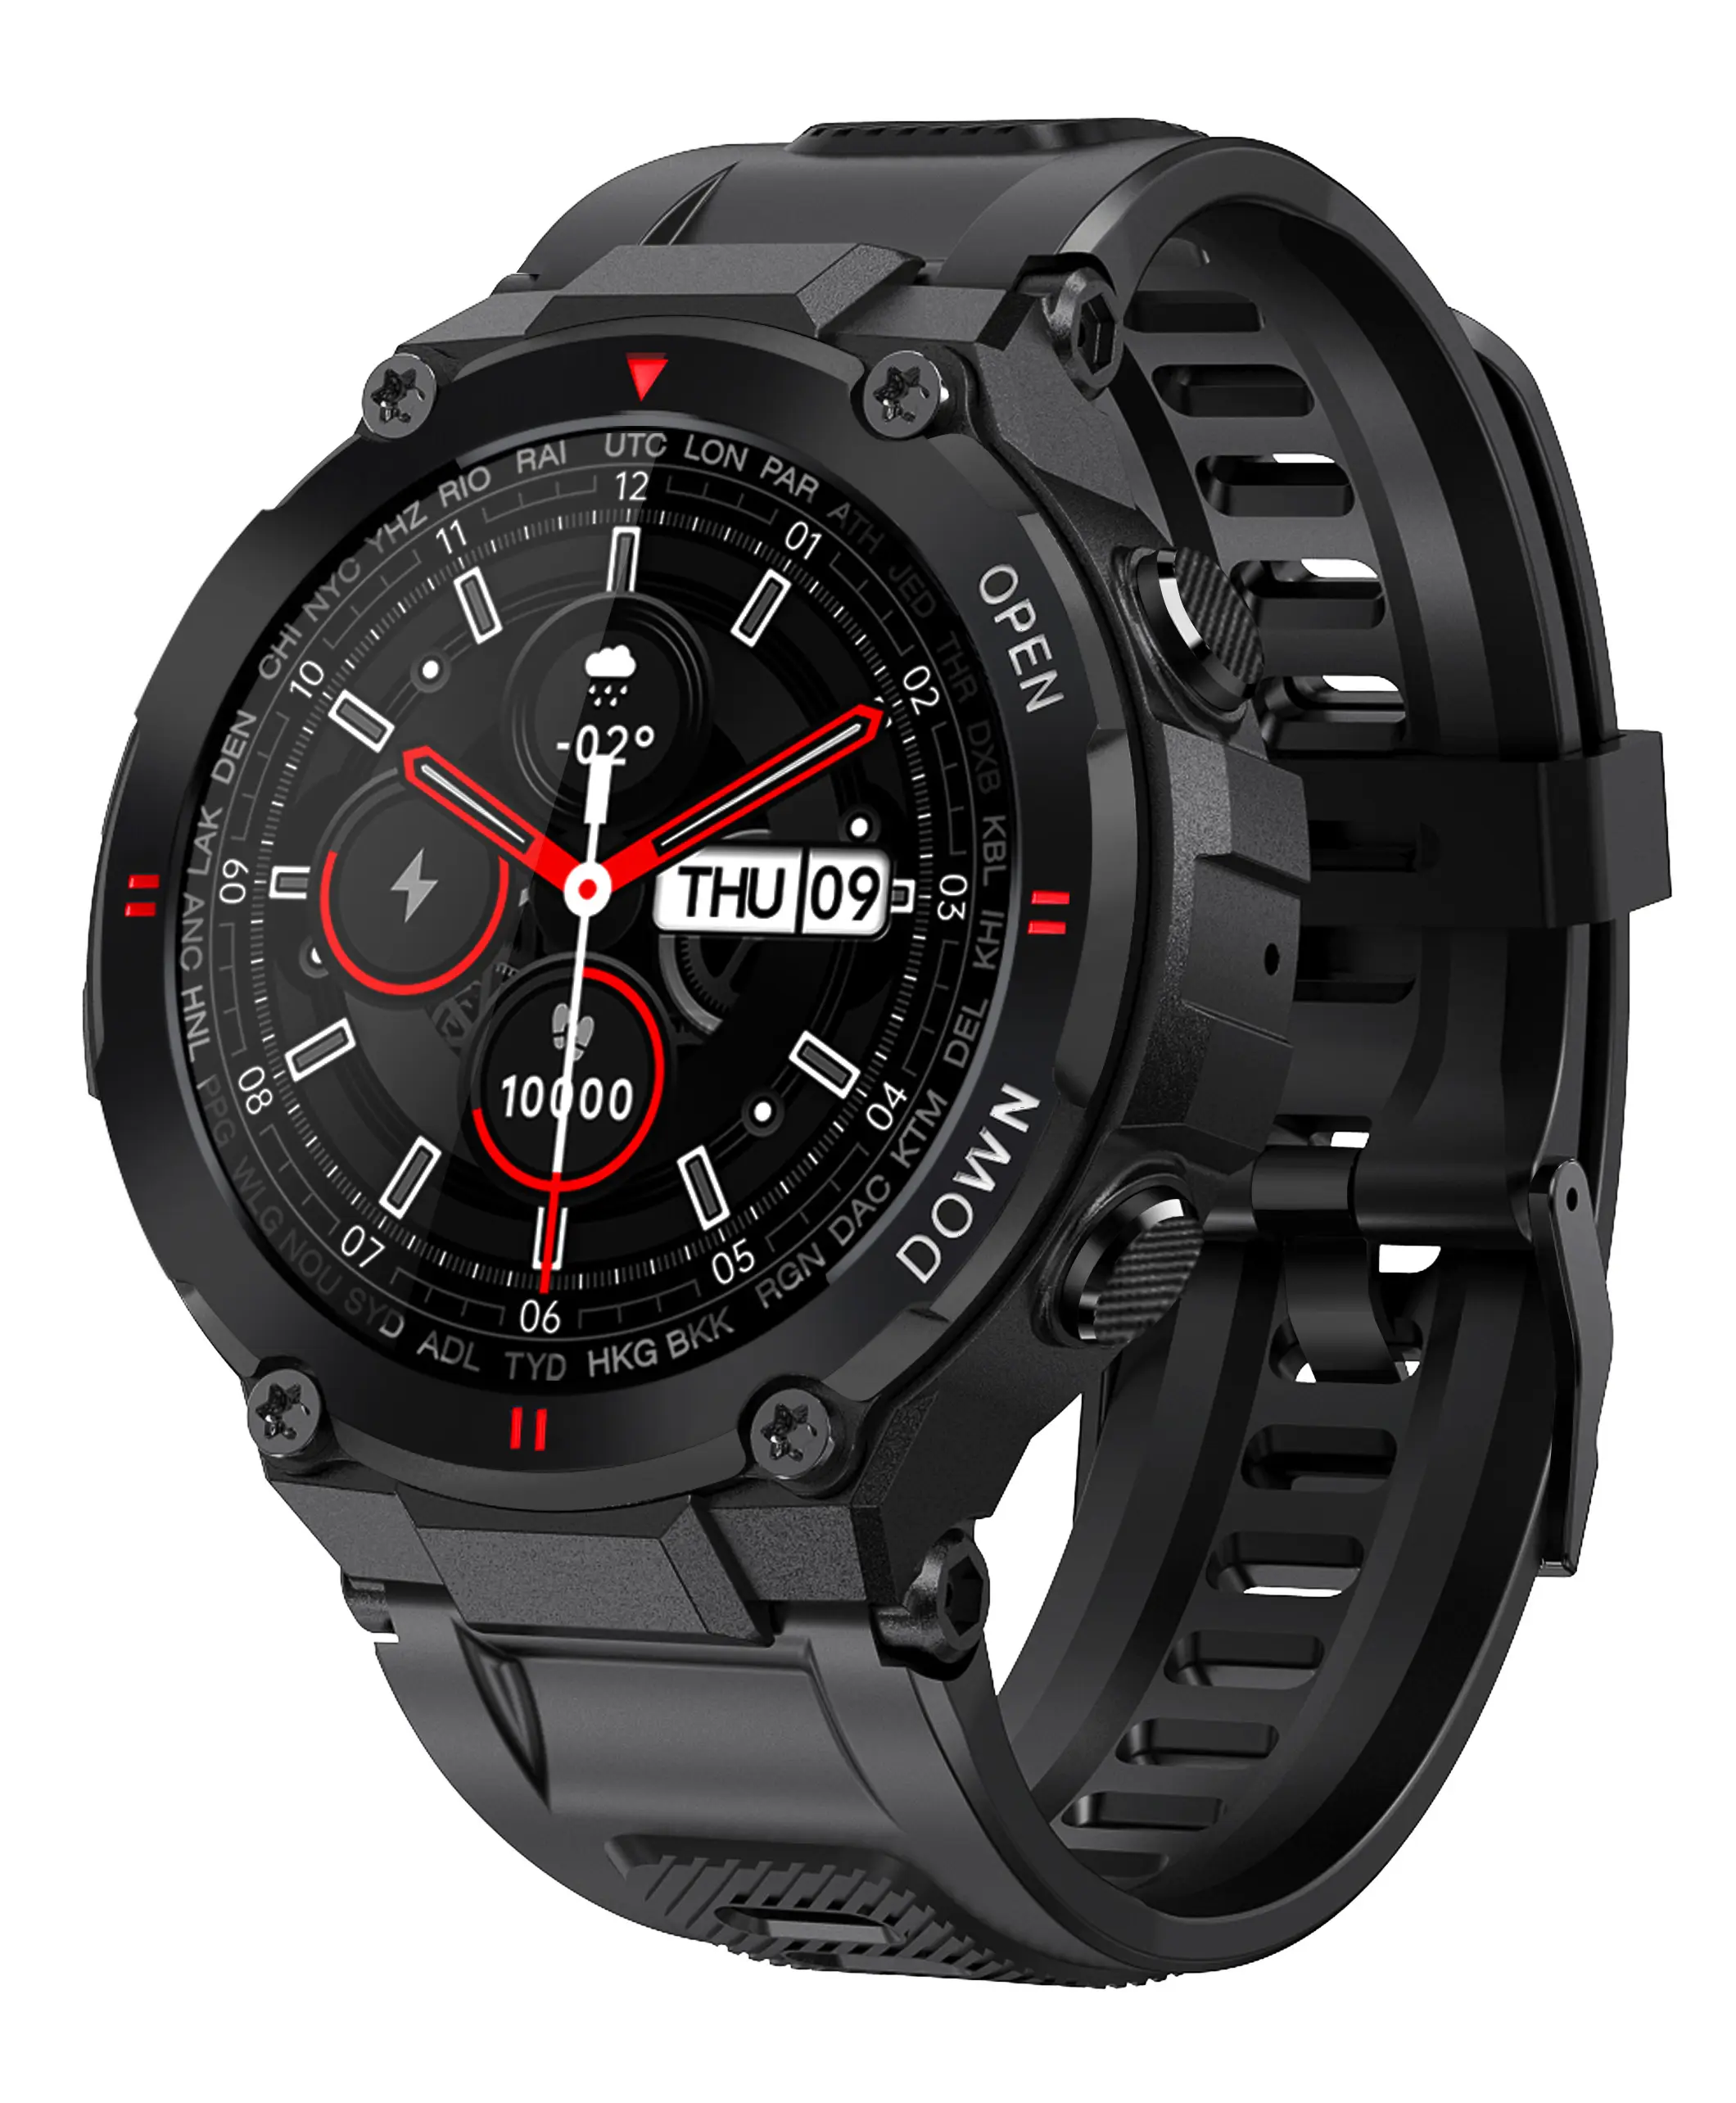 Sıcak satış Reloj akıllı akıllı saat telefon arama su geçirmez 400mAh büyük pil nabız monitörü Smartwatch K22 erkekler için